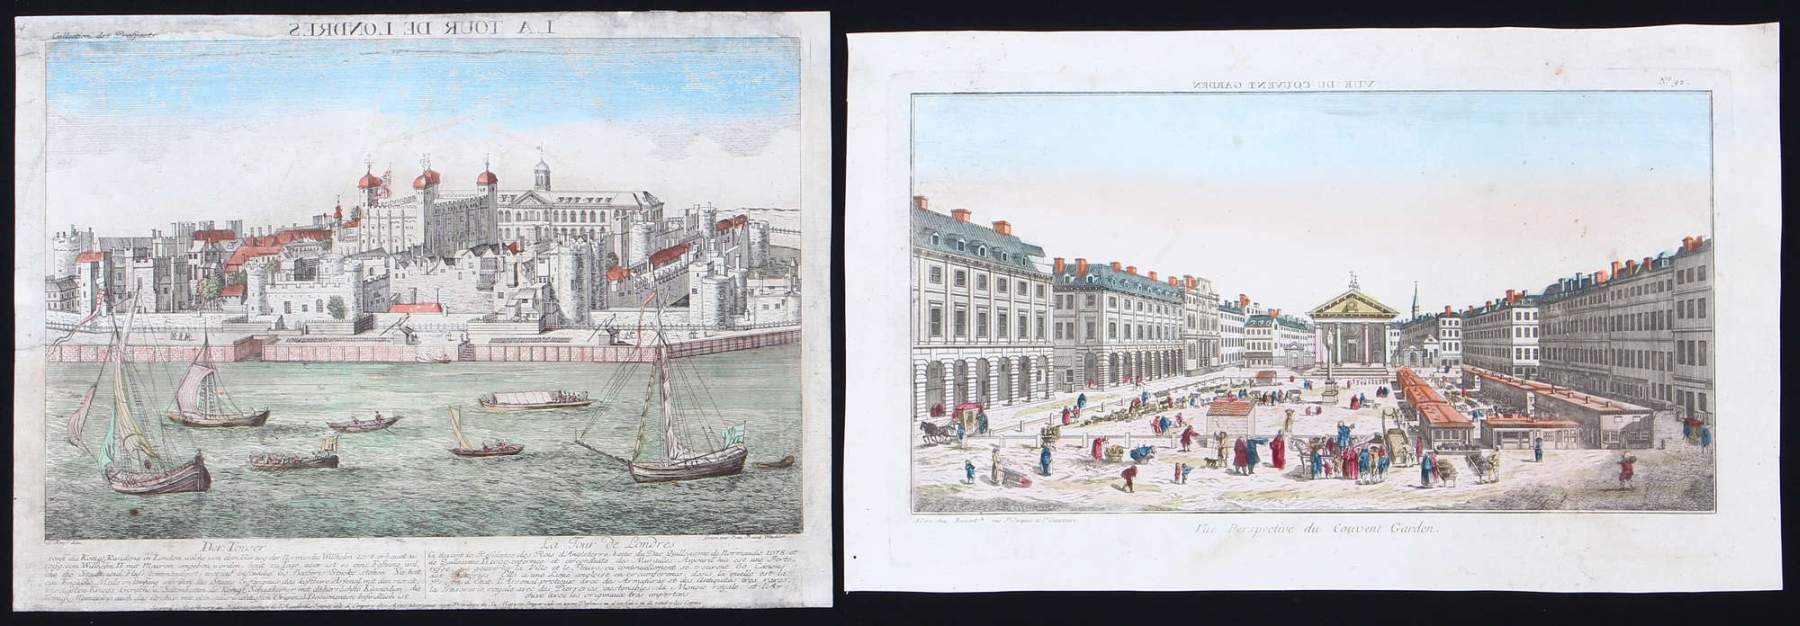 London. 8 Bll. kol., meist franz. Guckkastenkupf., um 1780: Börse, Couvent Garden, Westminster, Ans. - Image 3 of 3